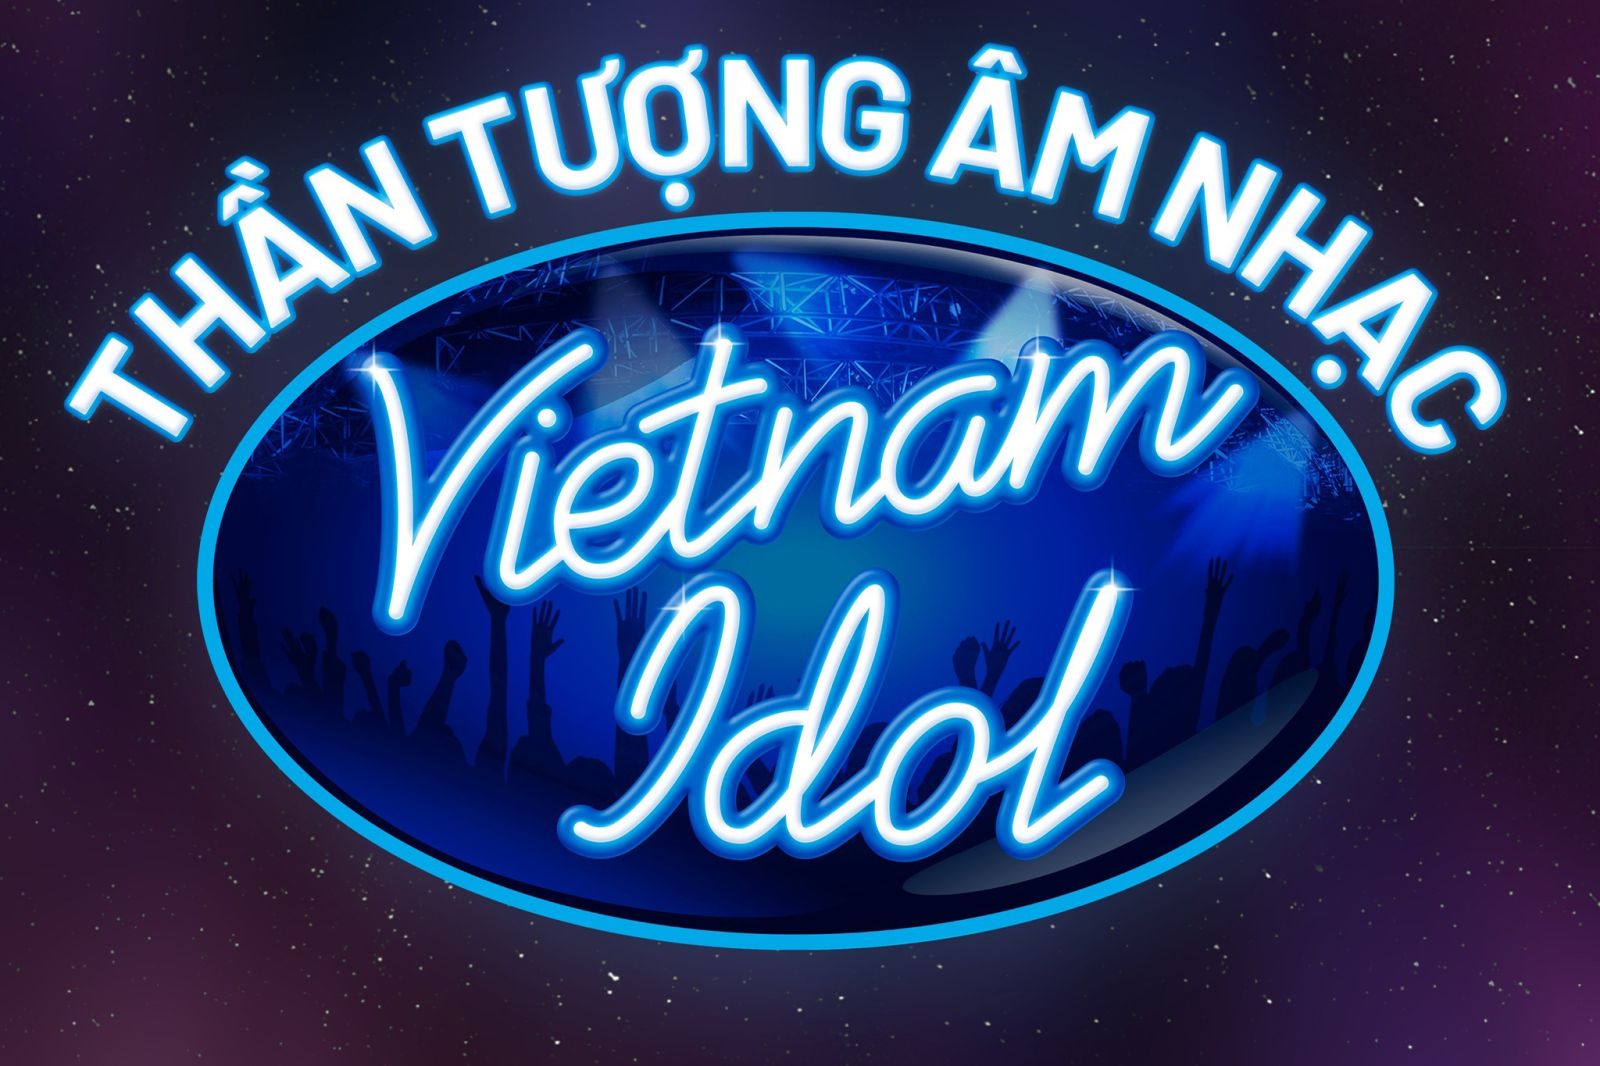 VietNam Idol trở lại sau 7 năm với sức hút hàng triệu lượt view